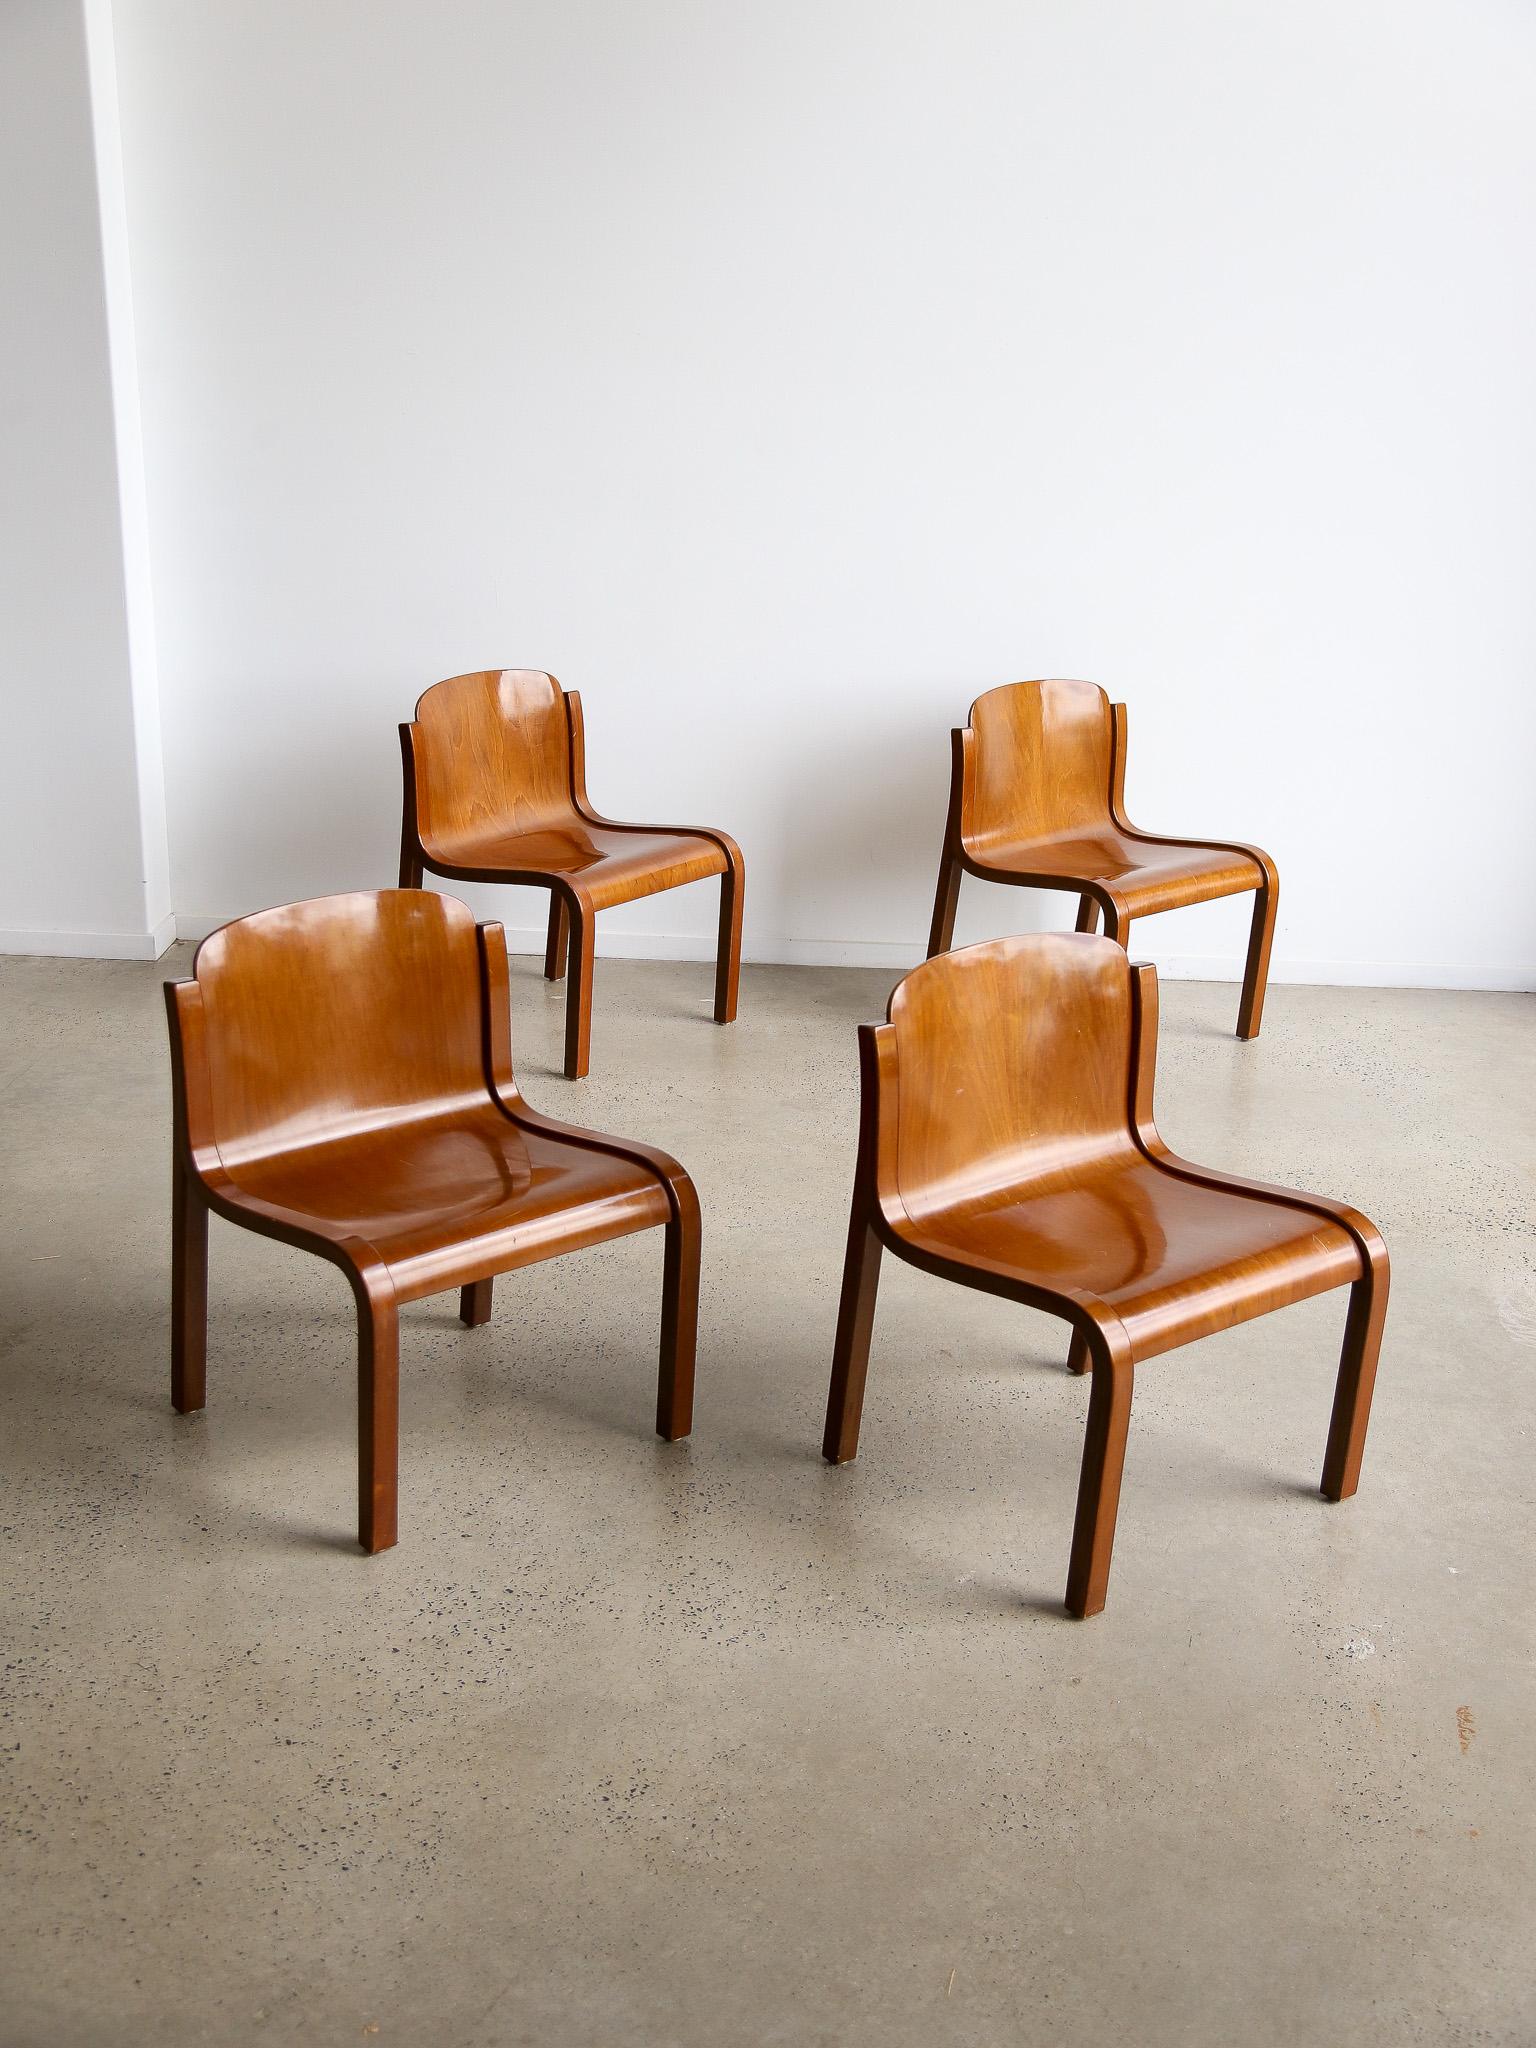 Ensemble de quatre chaises Mito par Carlo Bartoli pour Tisettanta. Ces chaises sont extrêmement légères et fabriquées à partir d'une seule feuille de contreplaqué plié avec un cadre en hêtre.  

Carlo Bartoli (1931-2018) était un designer italien